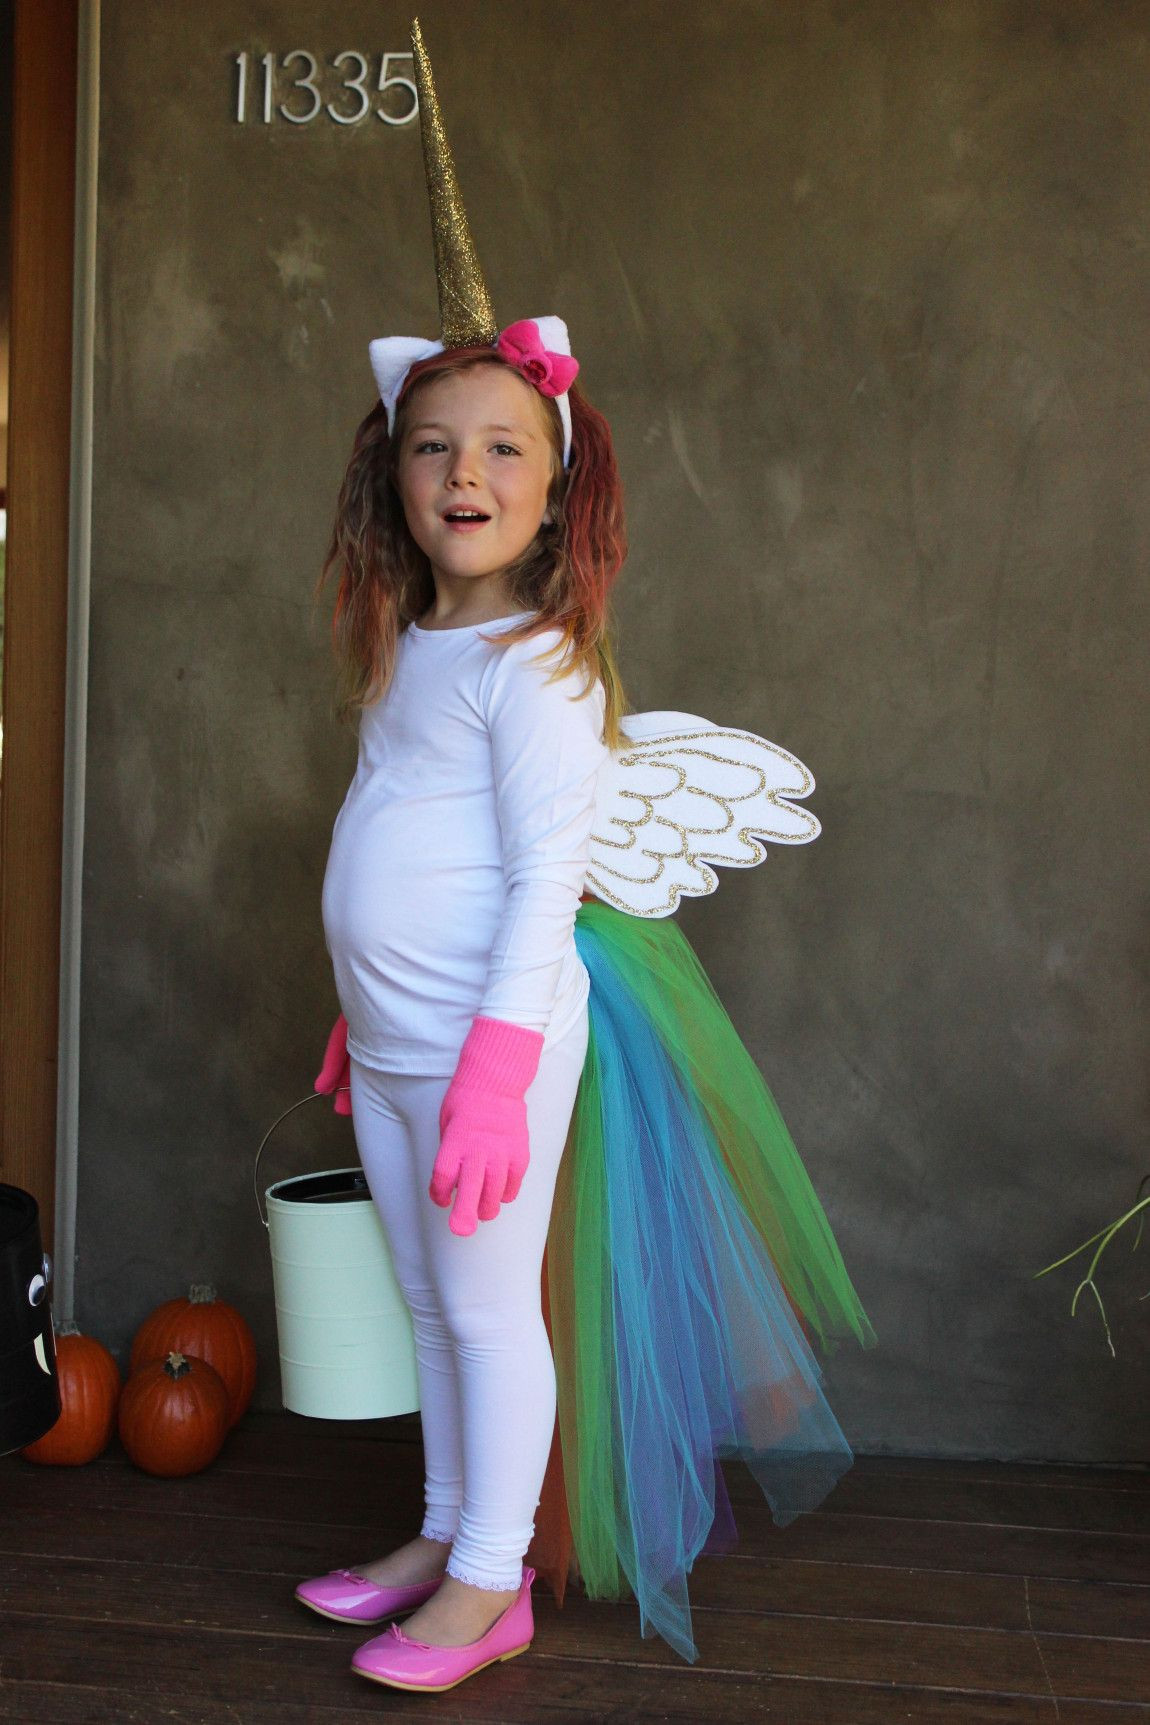 DIY Halloween Costume Toddler
 50 Best DIY Halloween Costumes For Kids in 2017